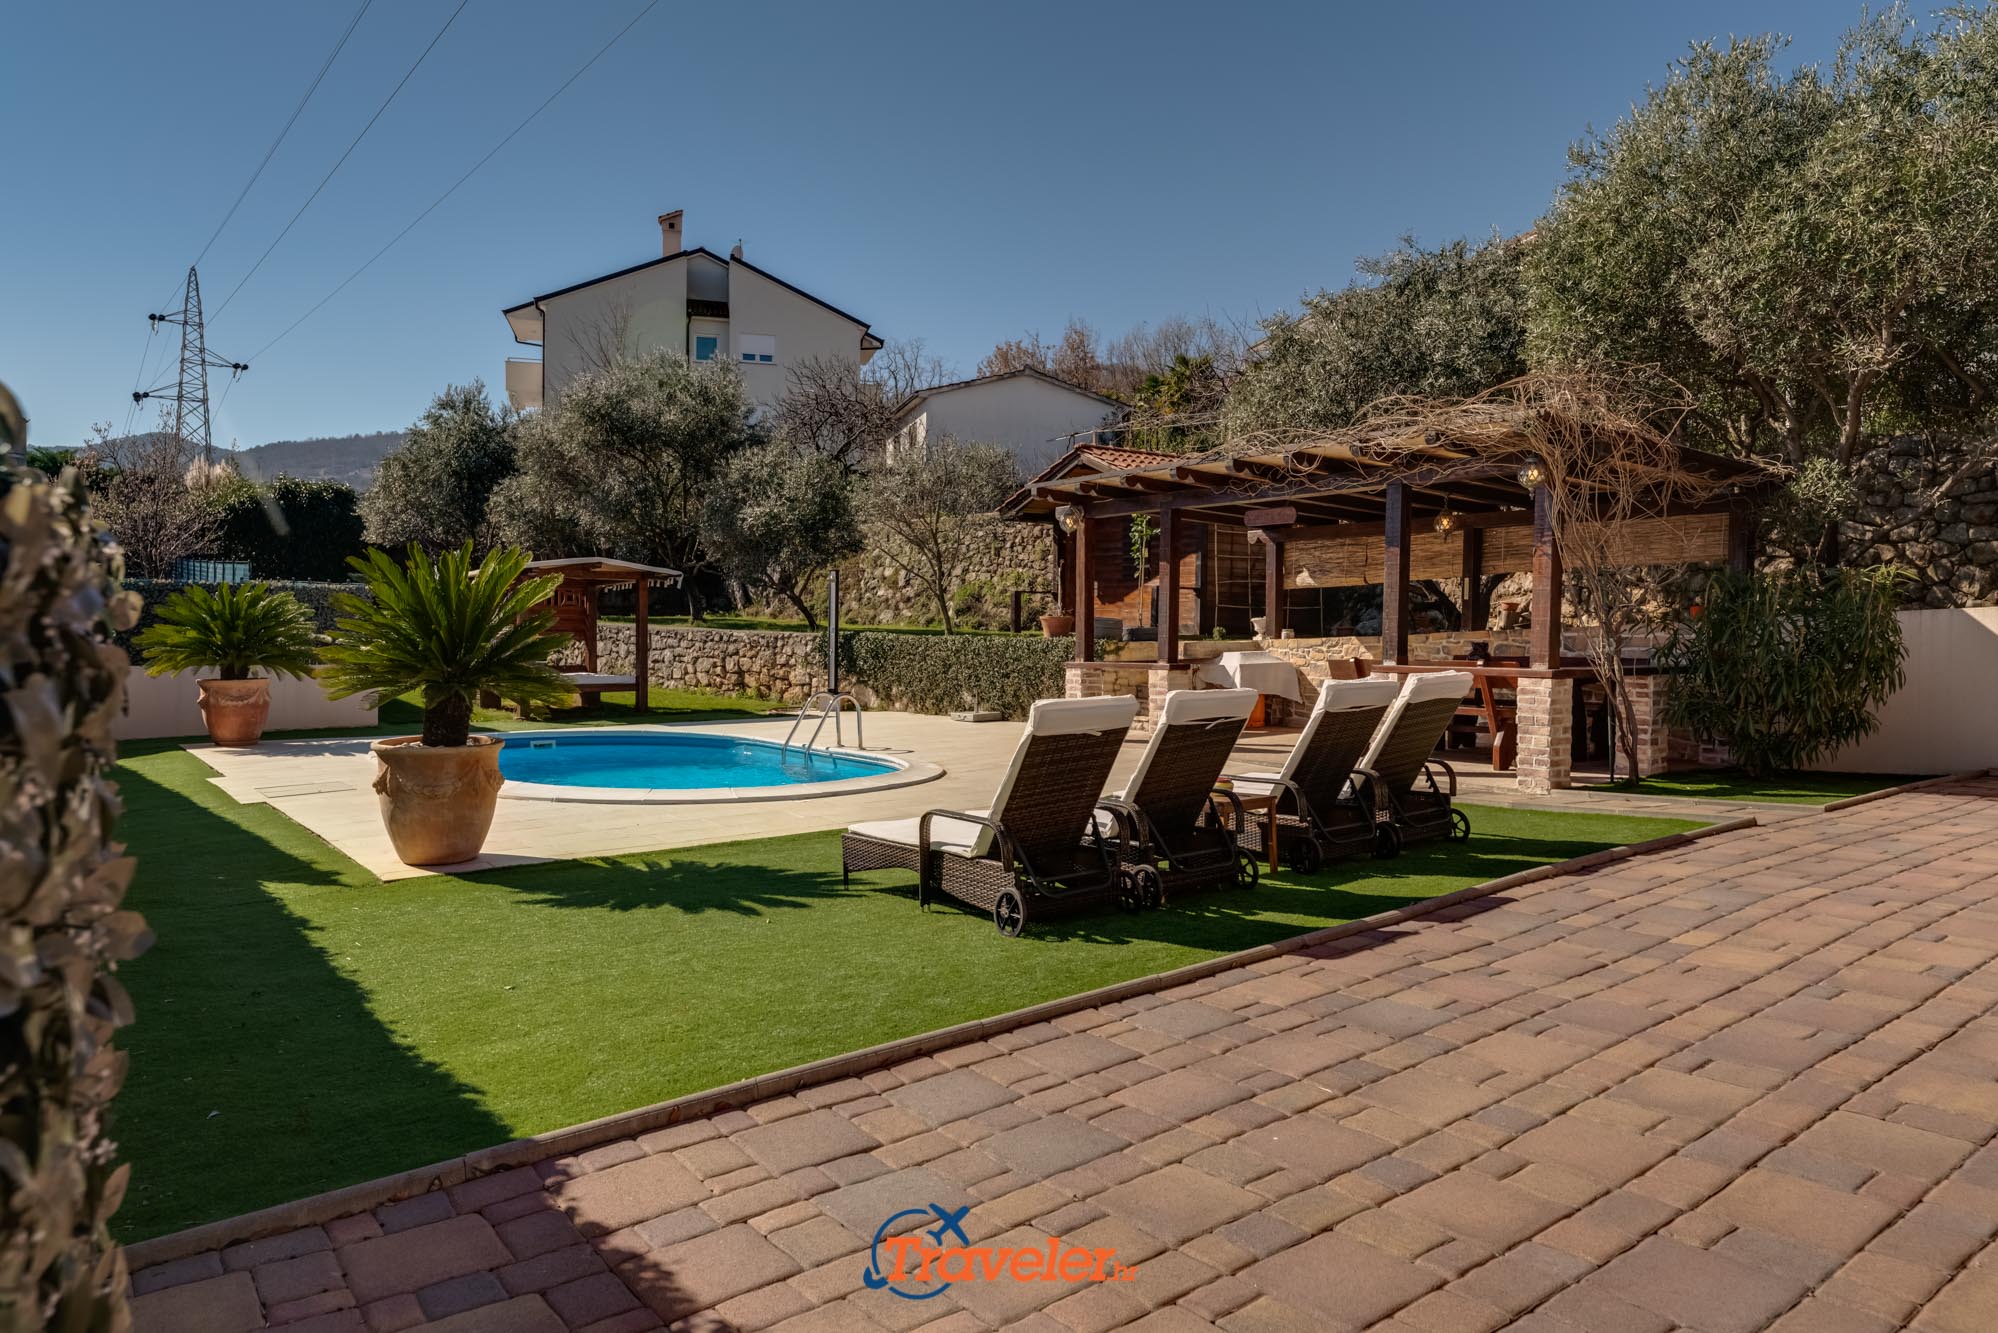 Ferienvilla mit Pool in Kroatien mit überdachter Terrasse und Liegestühlen zum Sonnenbaden auf der Wiese